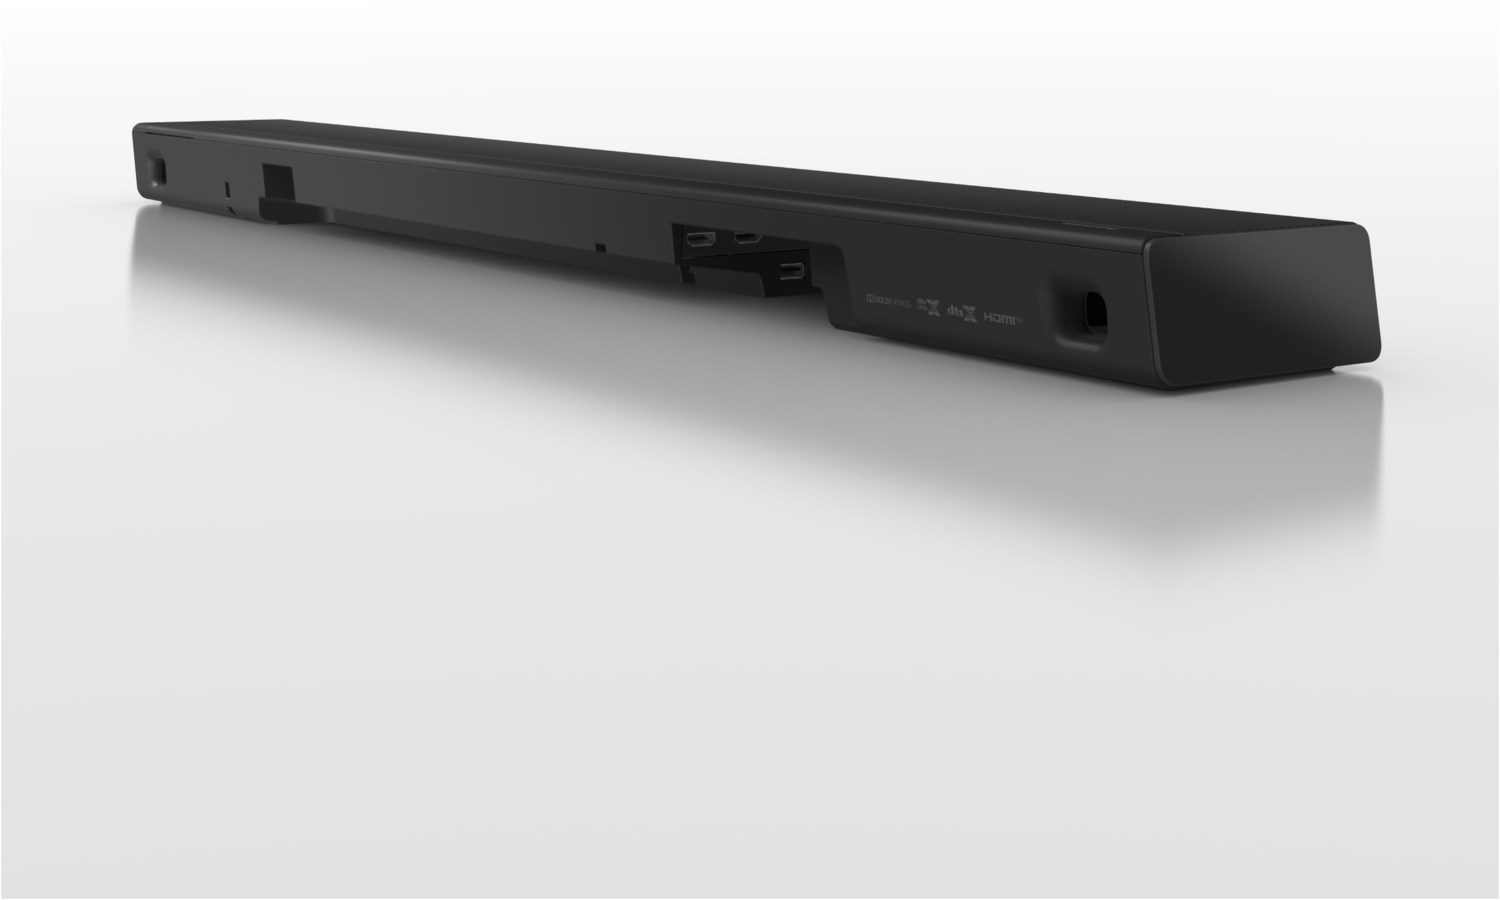 Panasonic SC-HTB600 Soundbar 360 W 2.1 Kanäle Dolby Atmos schwarz